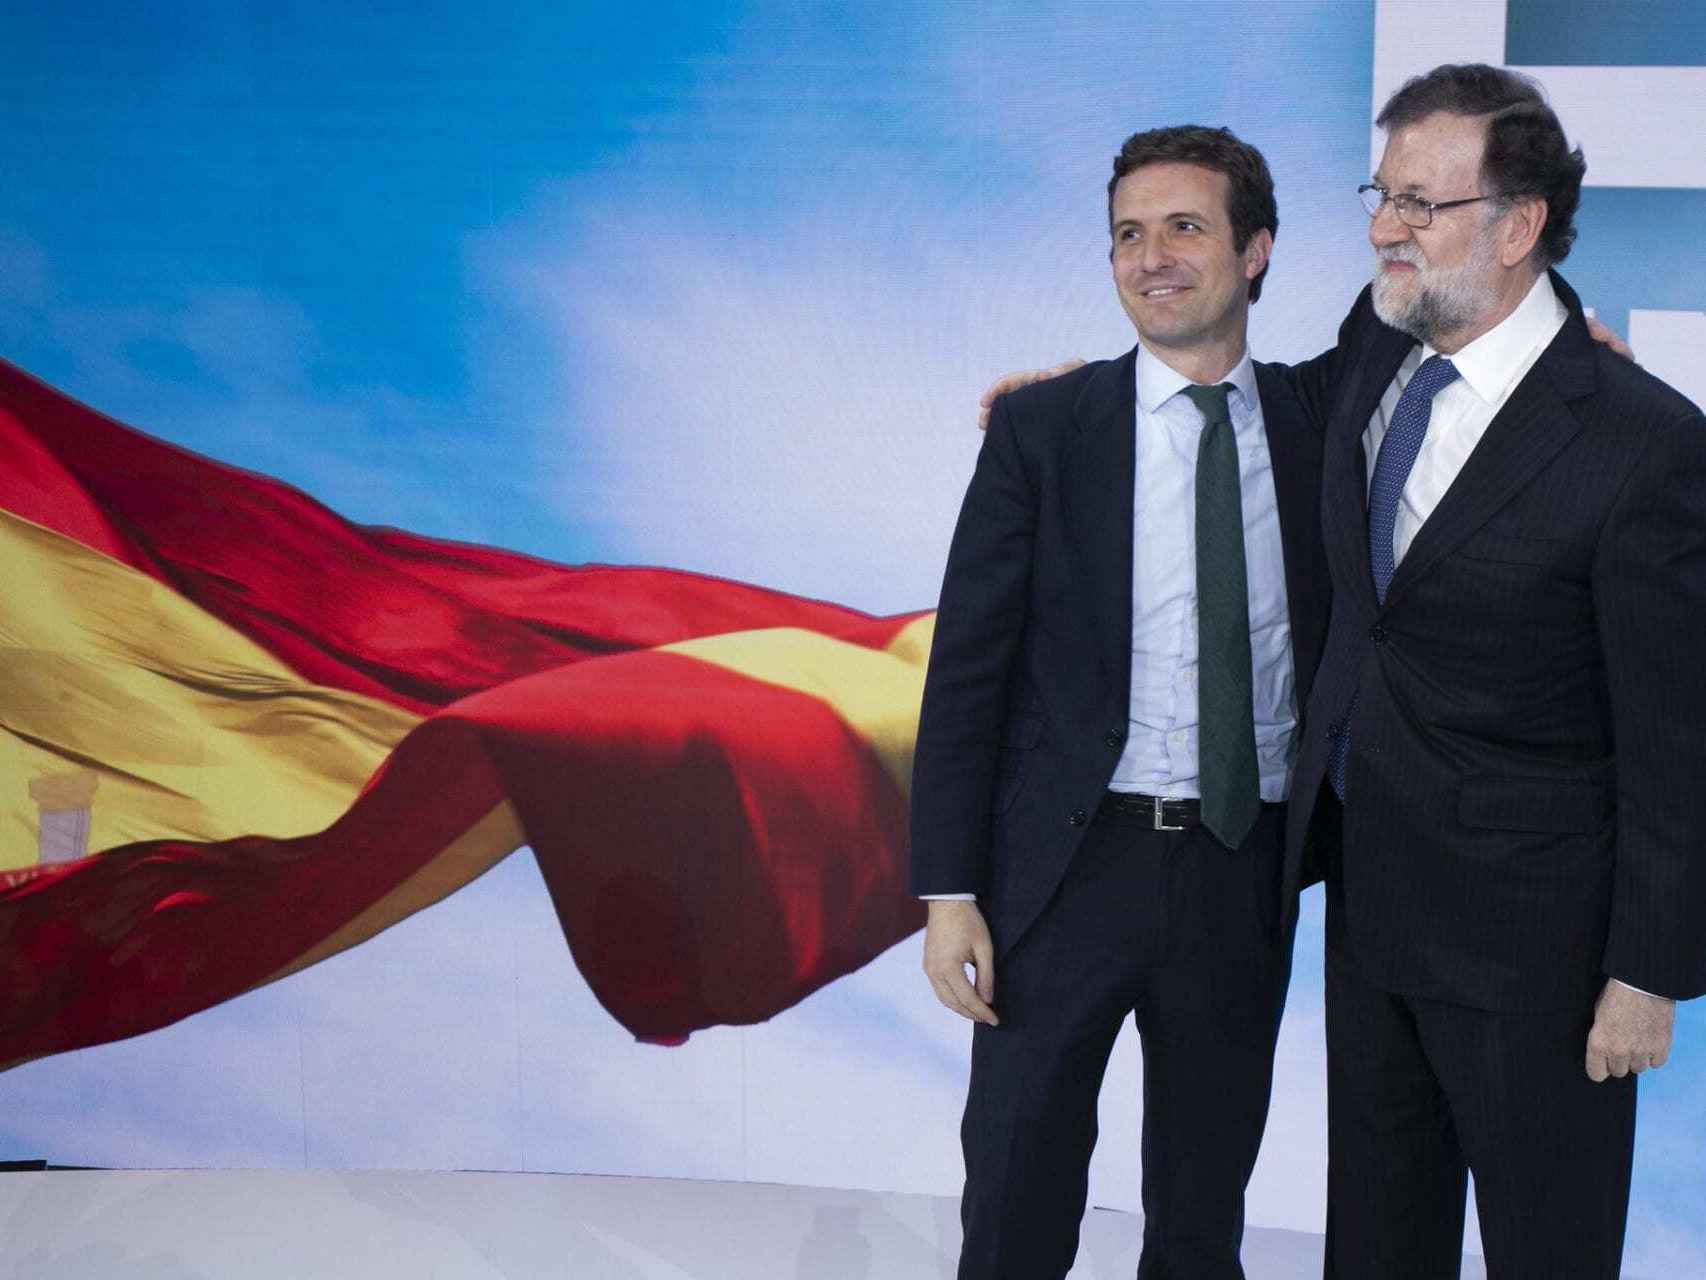 Mariano Rajoy y Pablo Casado en el Congreso Nacional de julio de 2018.